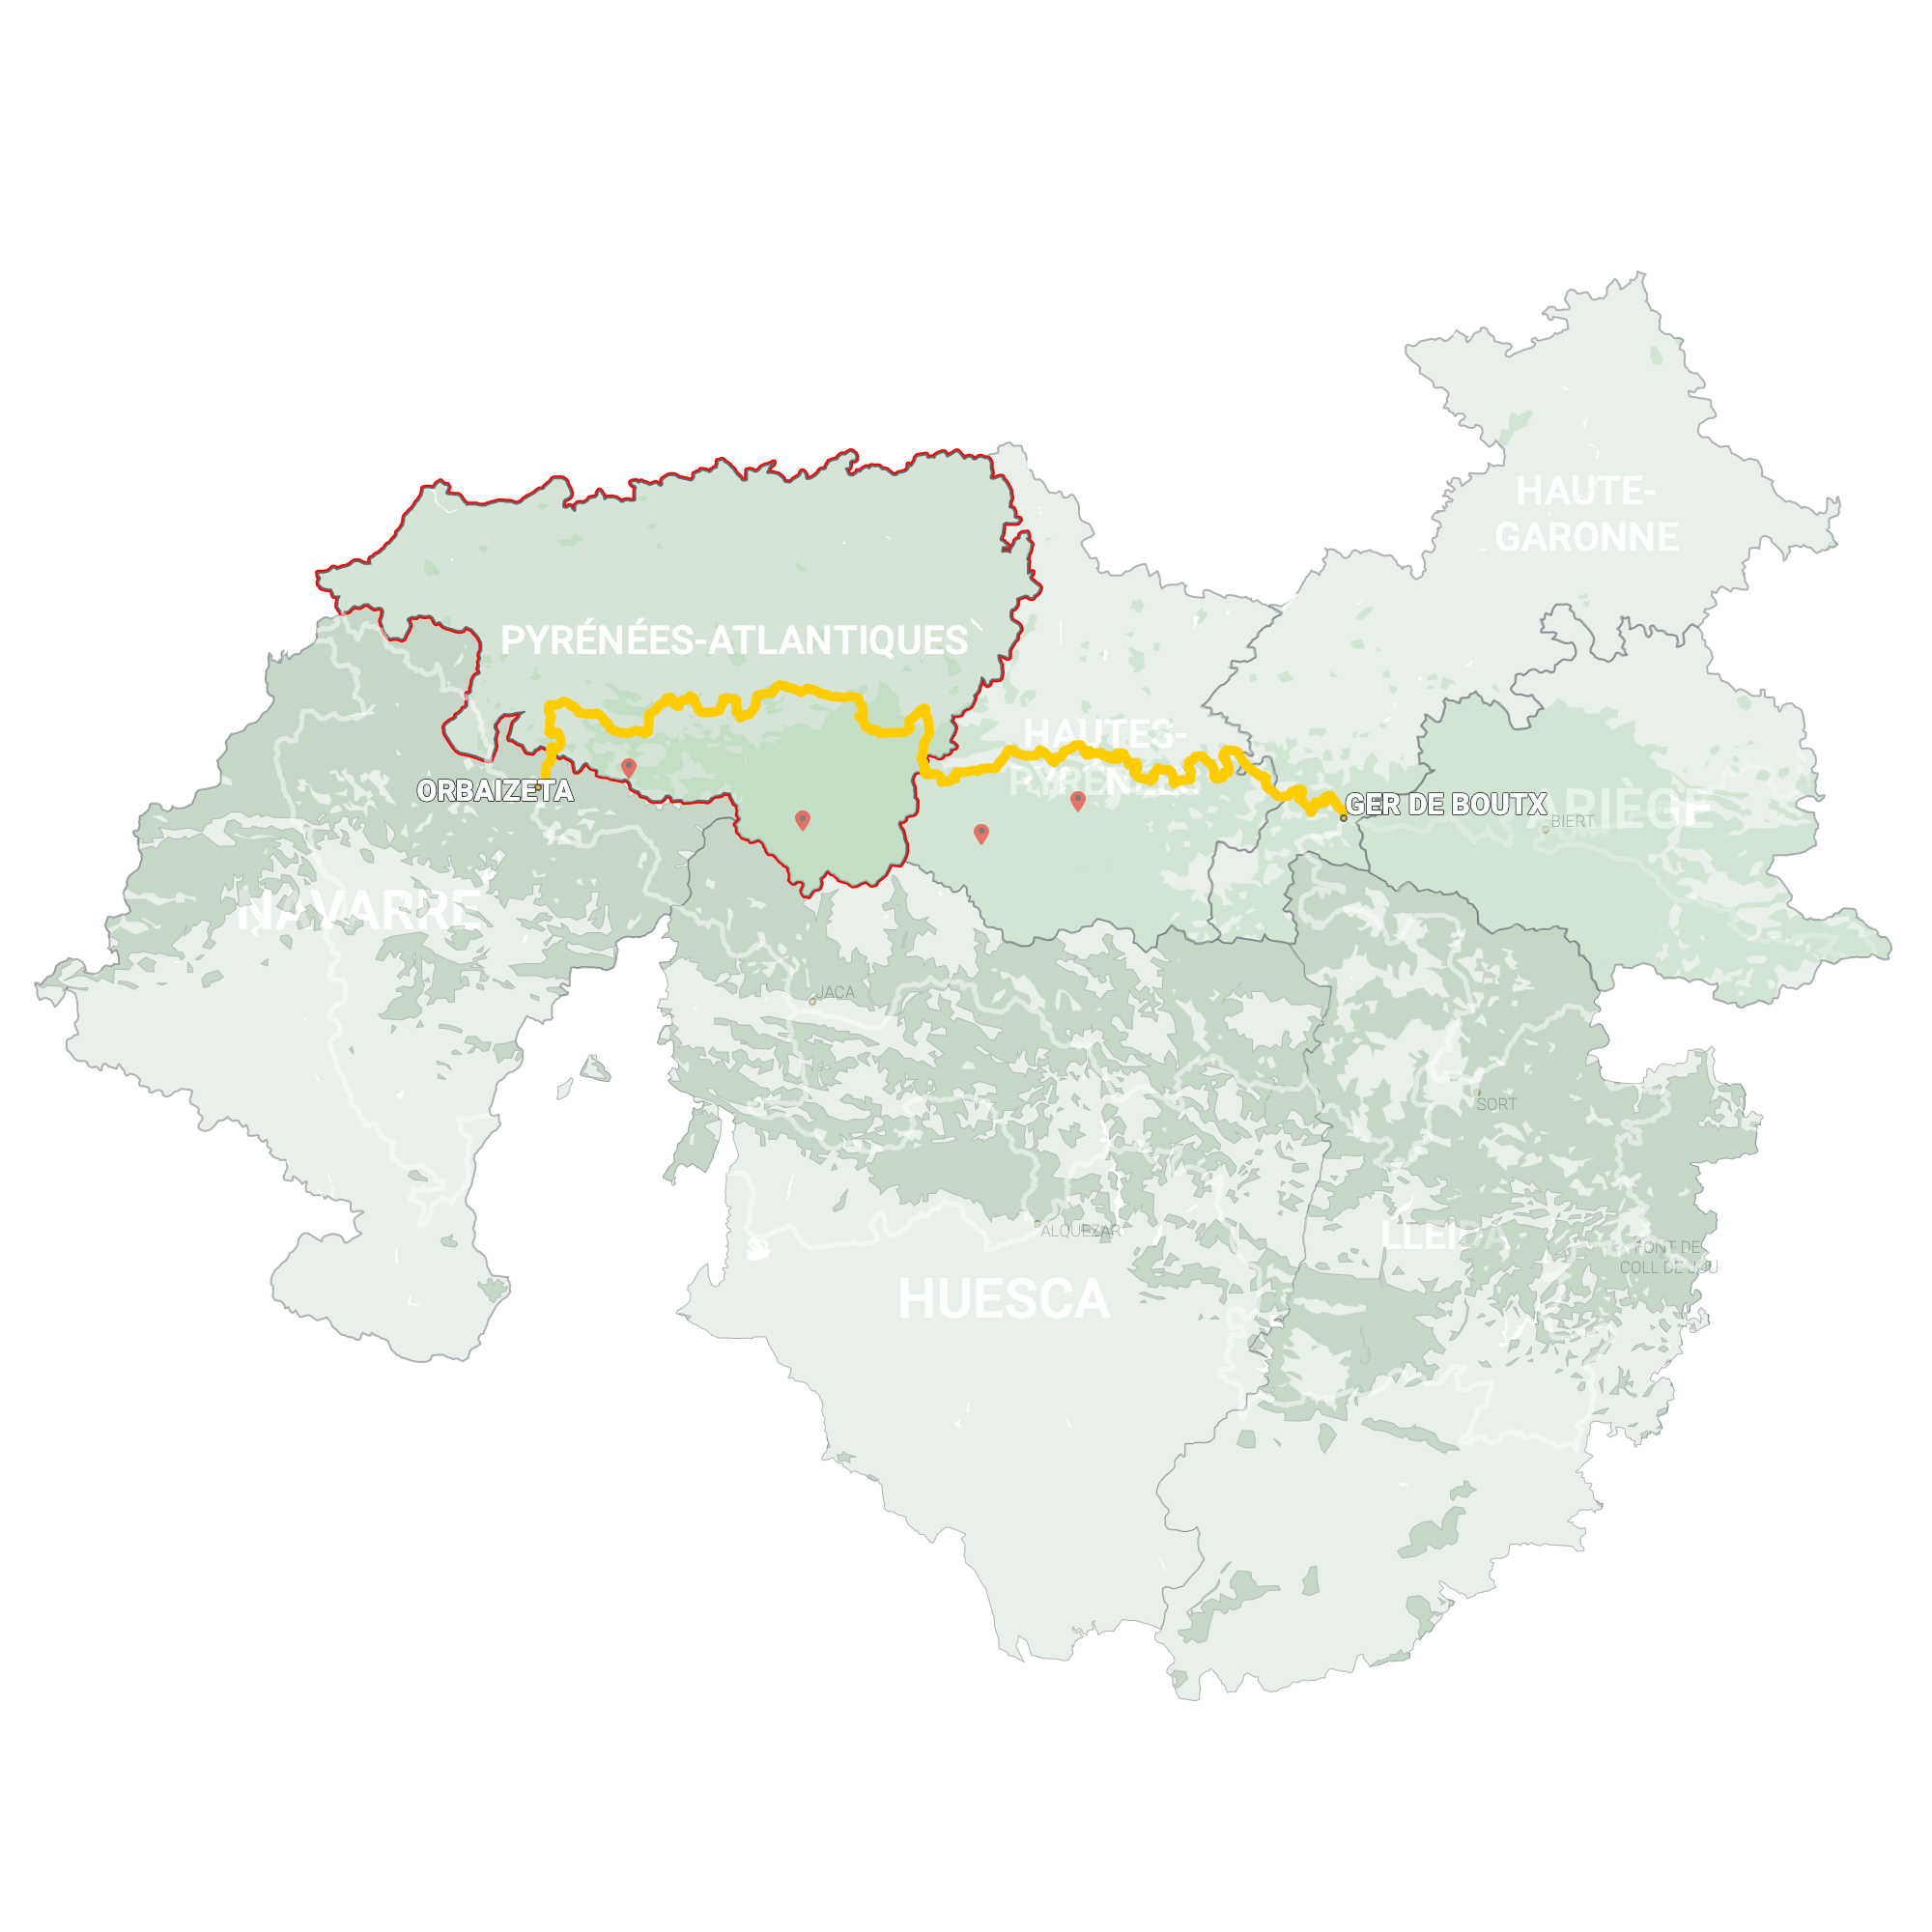 GLR 20 Region Pyrénées-Atlantiques Map Overview